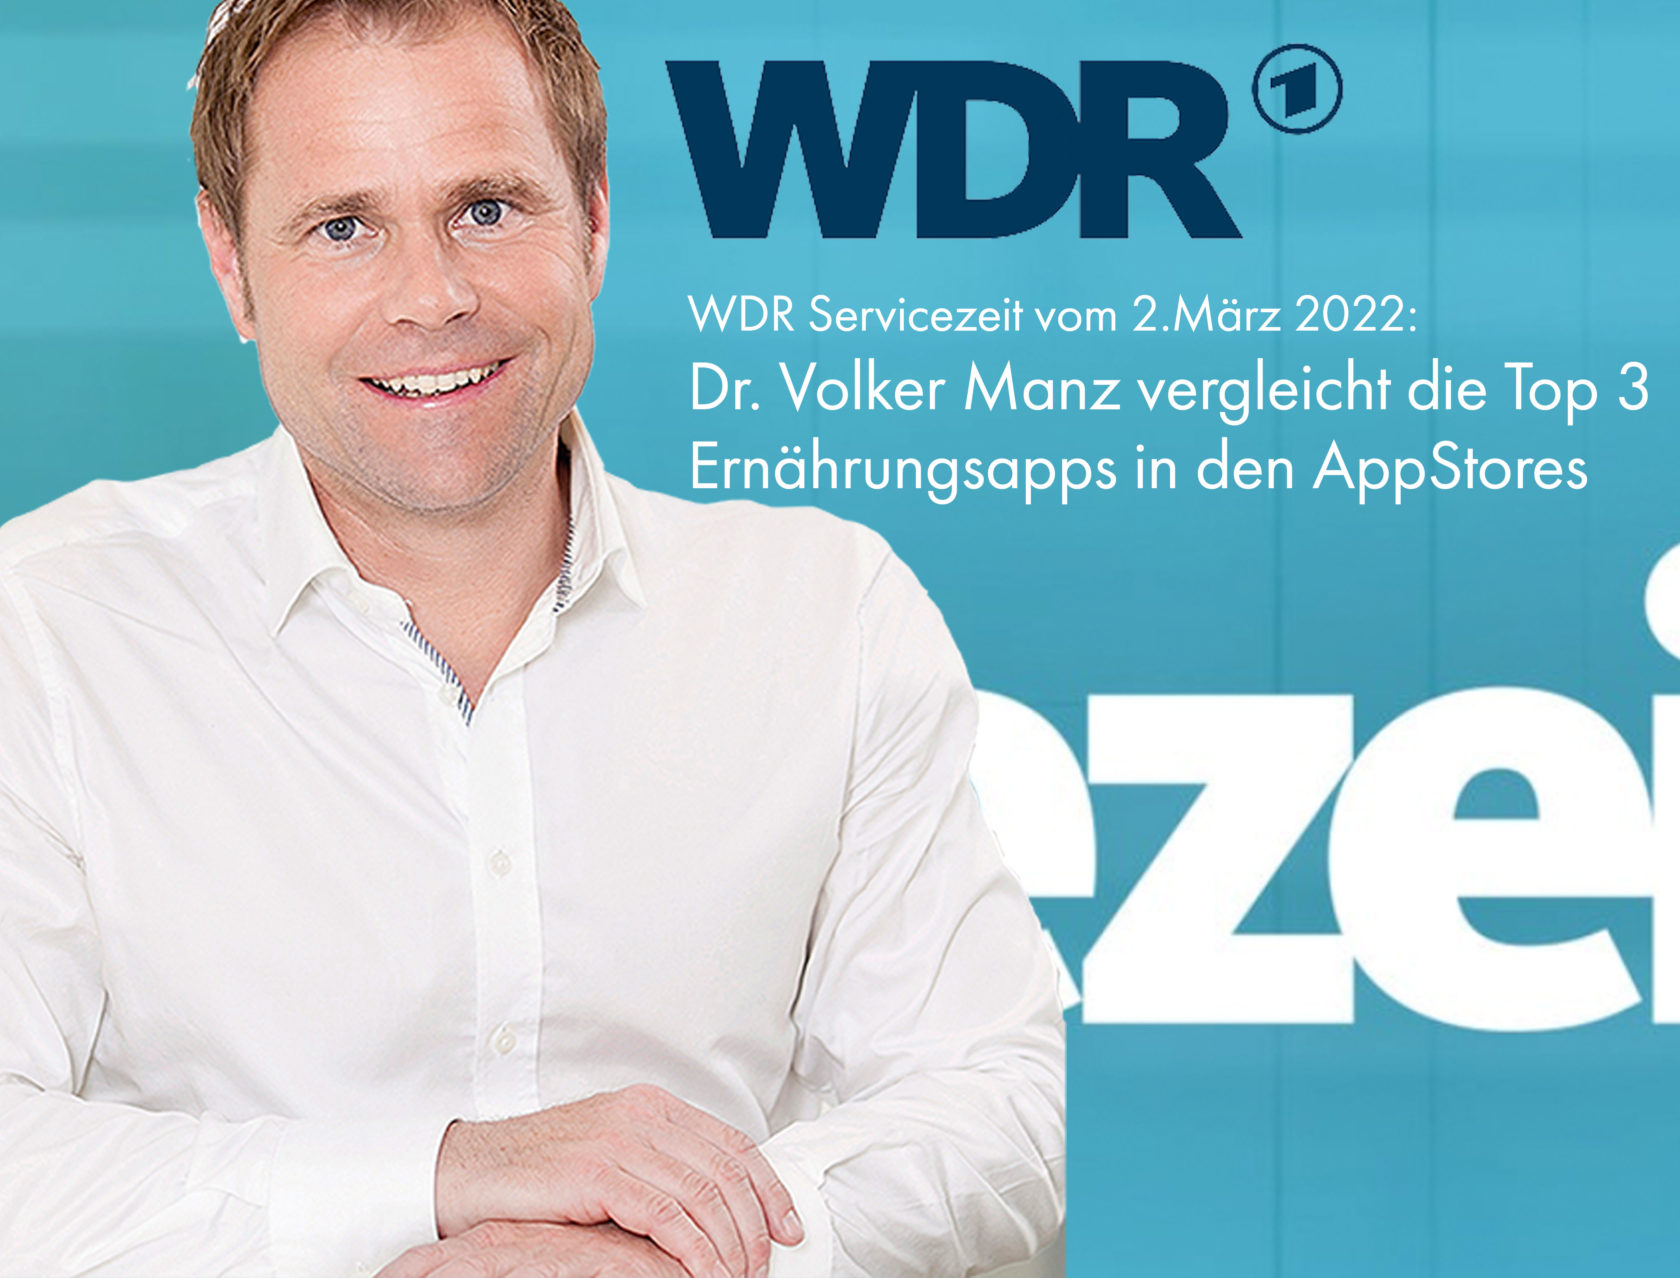 Dr. Volker Manz vom SI Ernährungsinstitut vergleicht Ernährungsapps in der WDR Servicezeit